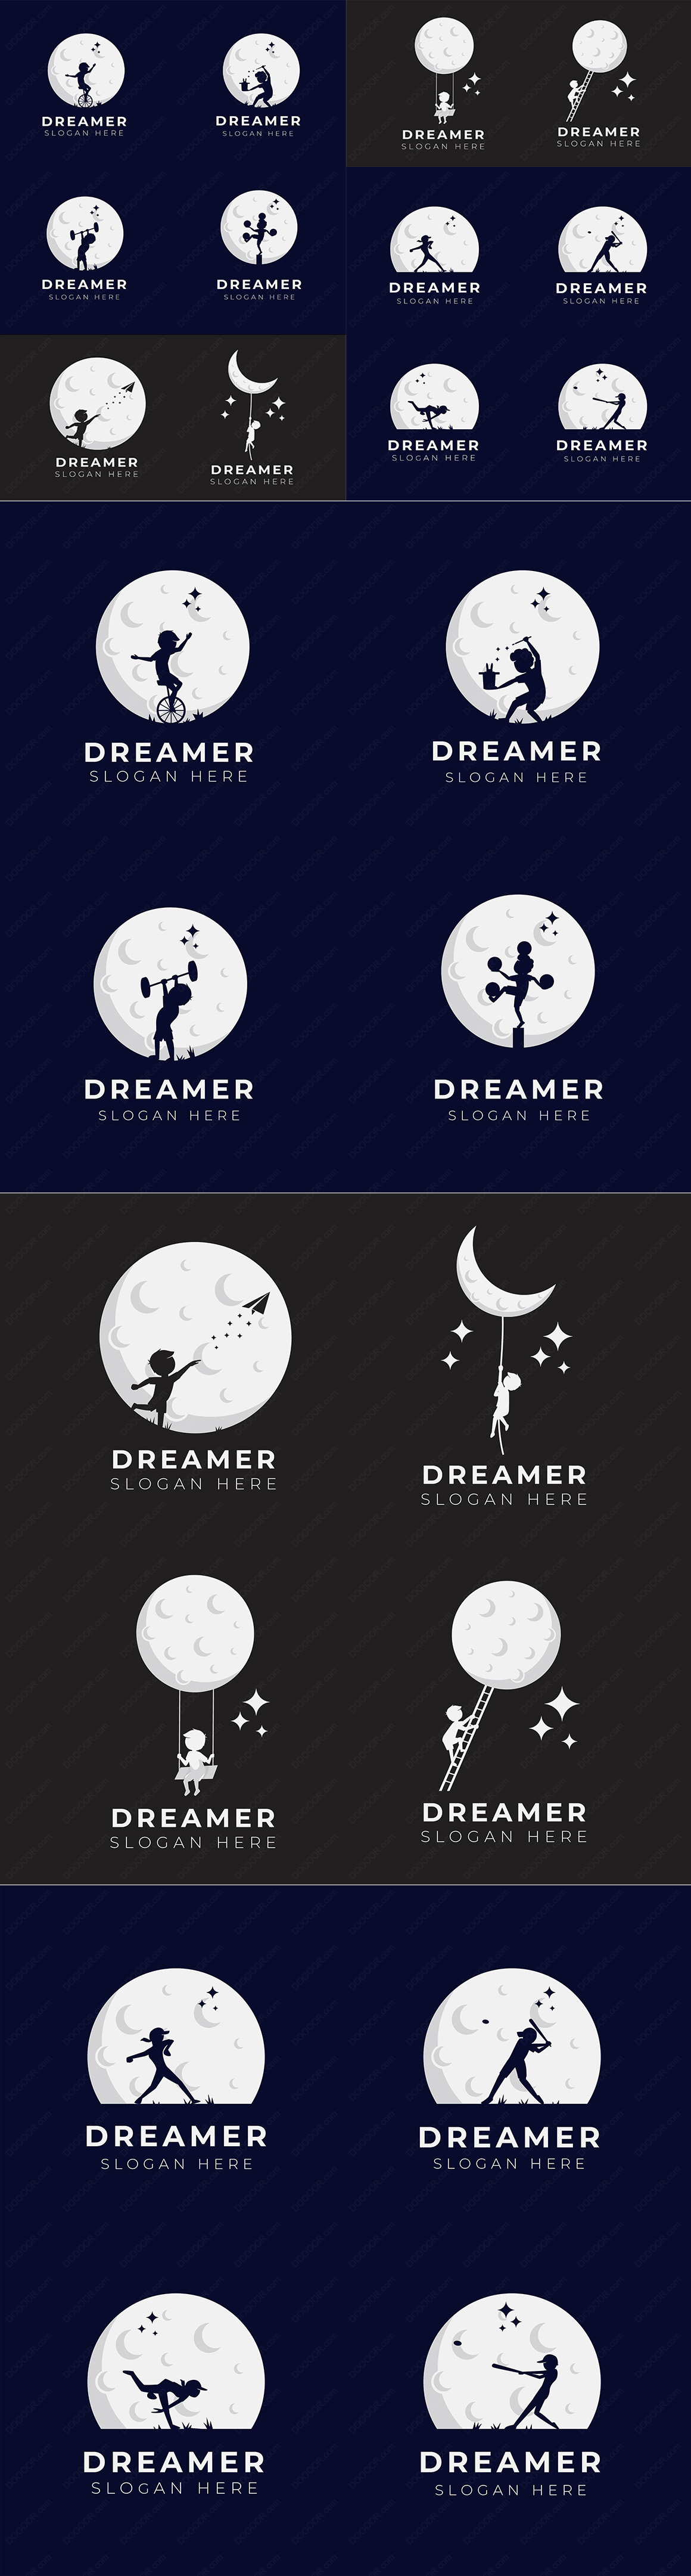 12款孩子的梦想儿童剪影与月球矢量插画LOGO模板素材.jpg